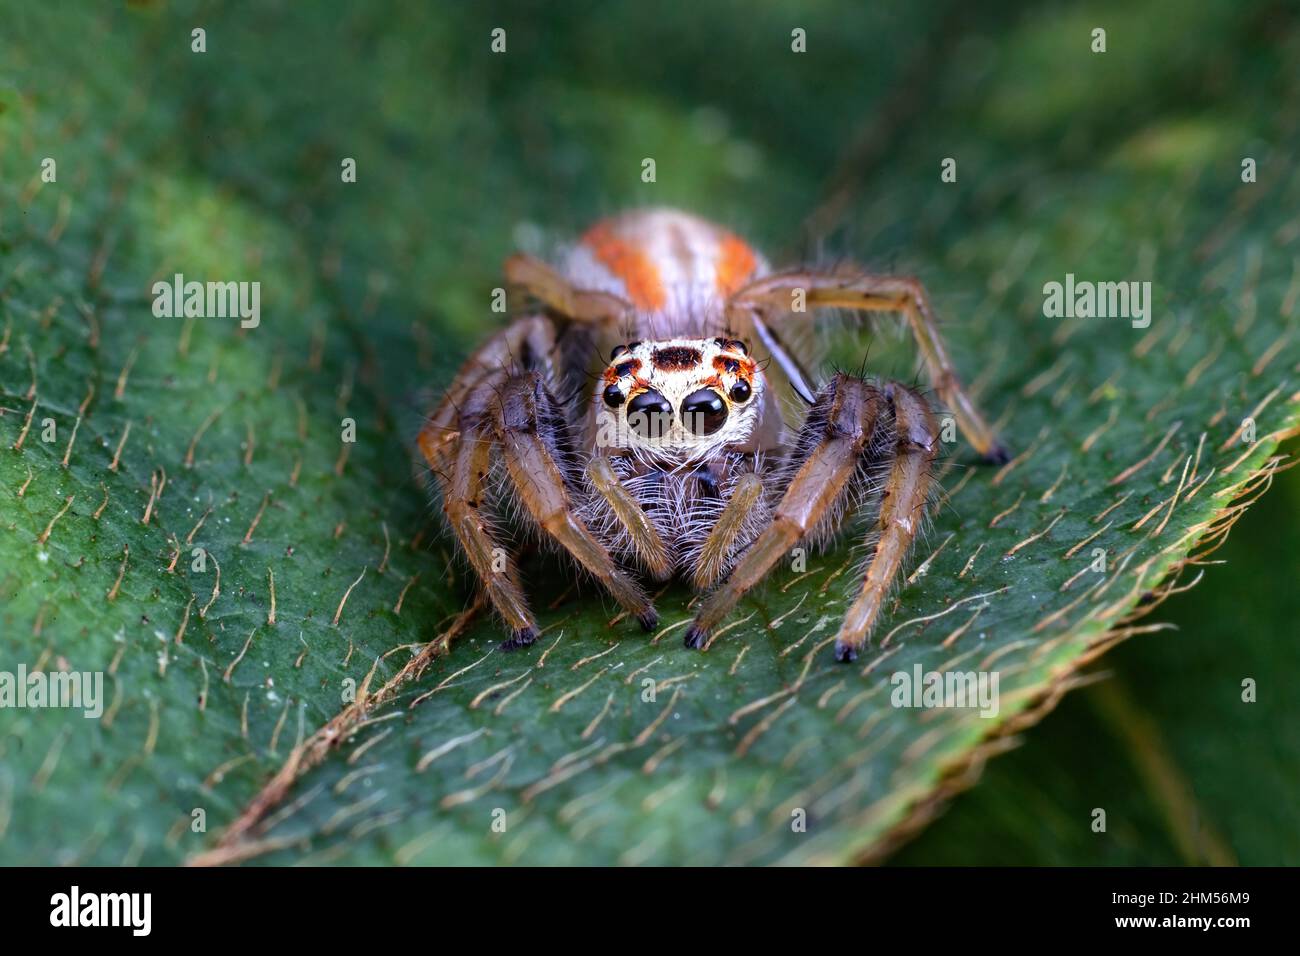 Chongqing Mountain écologique - araignées sautant Banque D'Images